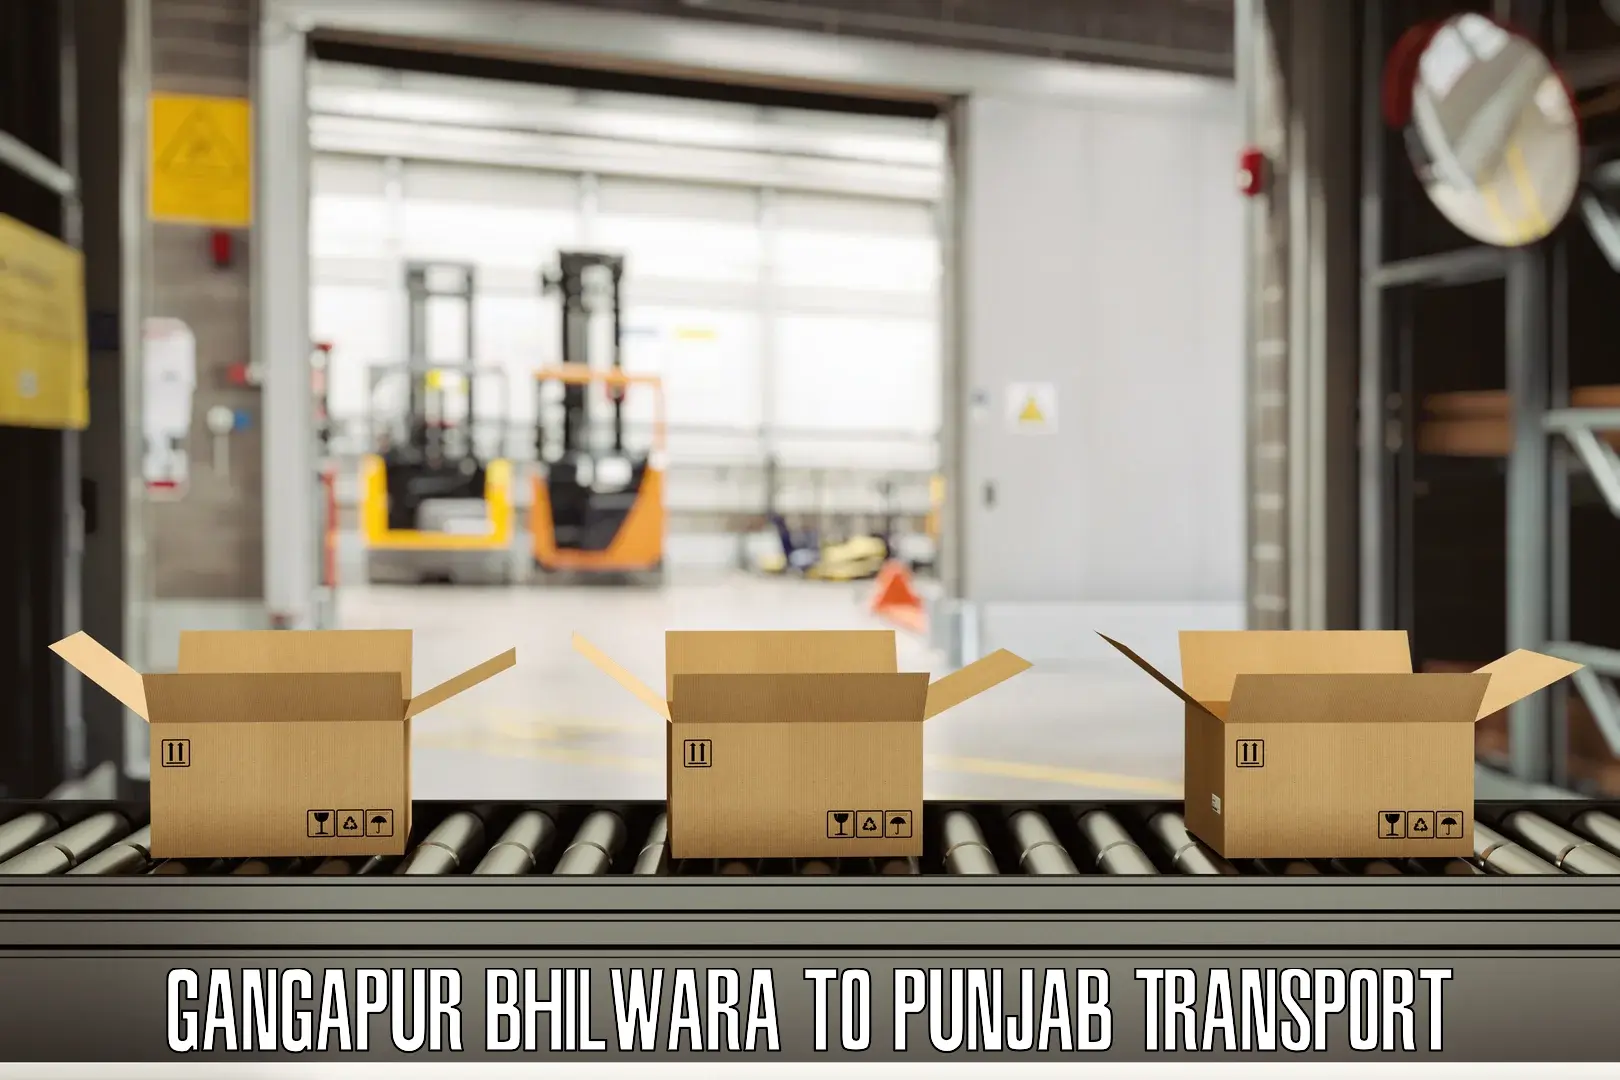 Cargo train transport services in Gangapur Bhilwara to Punjab